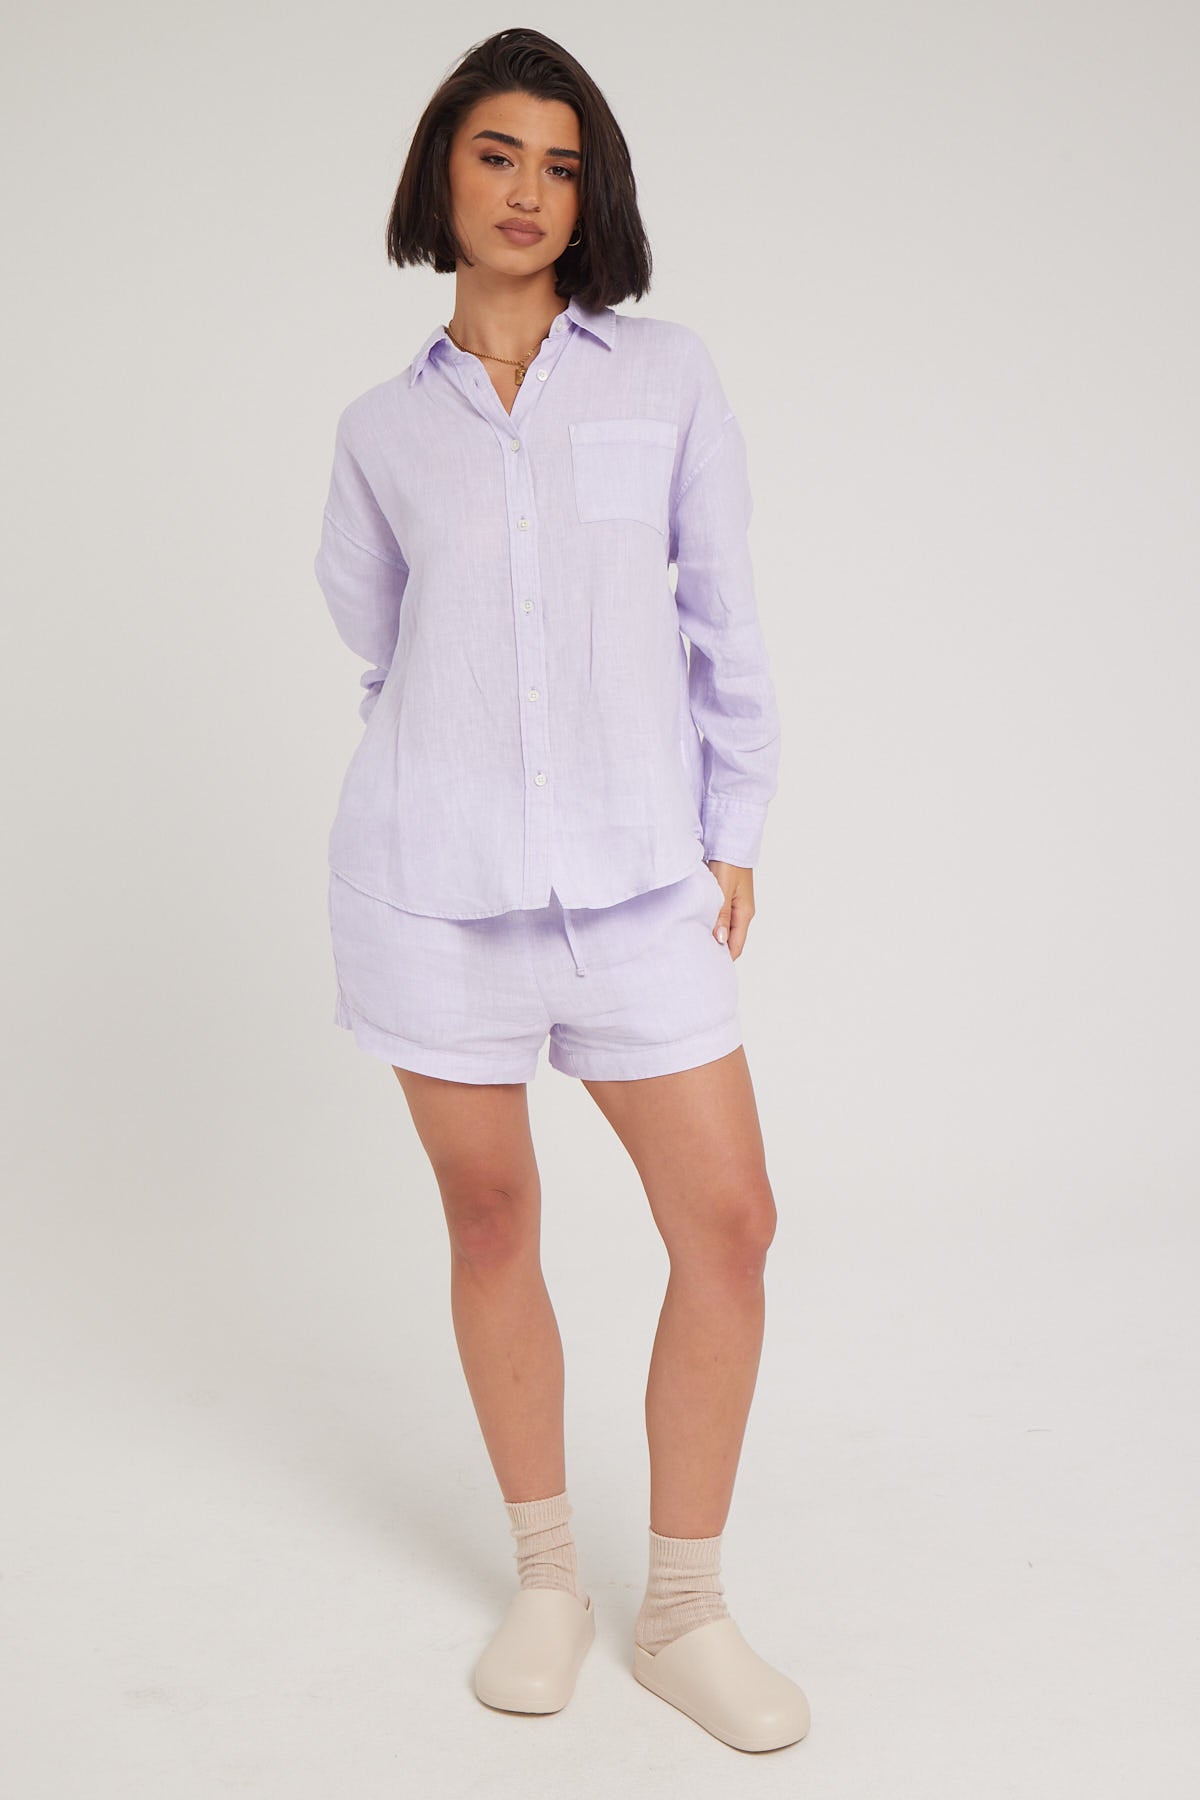 Academy Brand Hampton Linen Shirt Lavendar